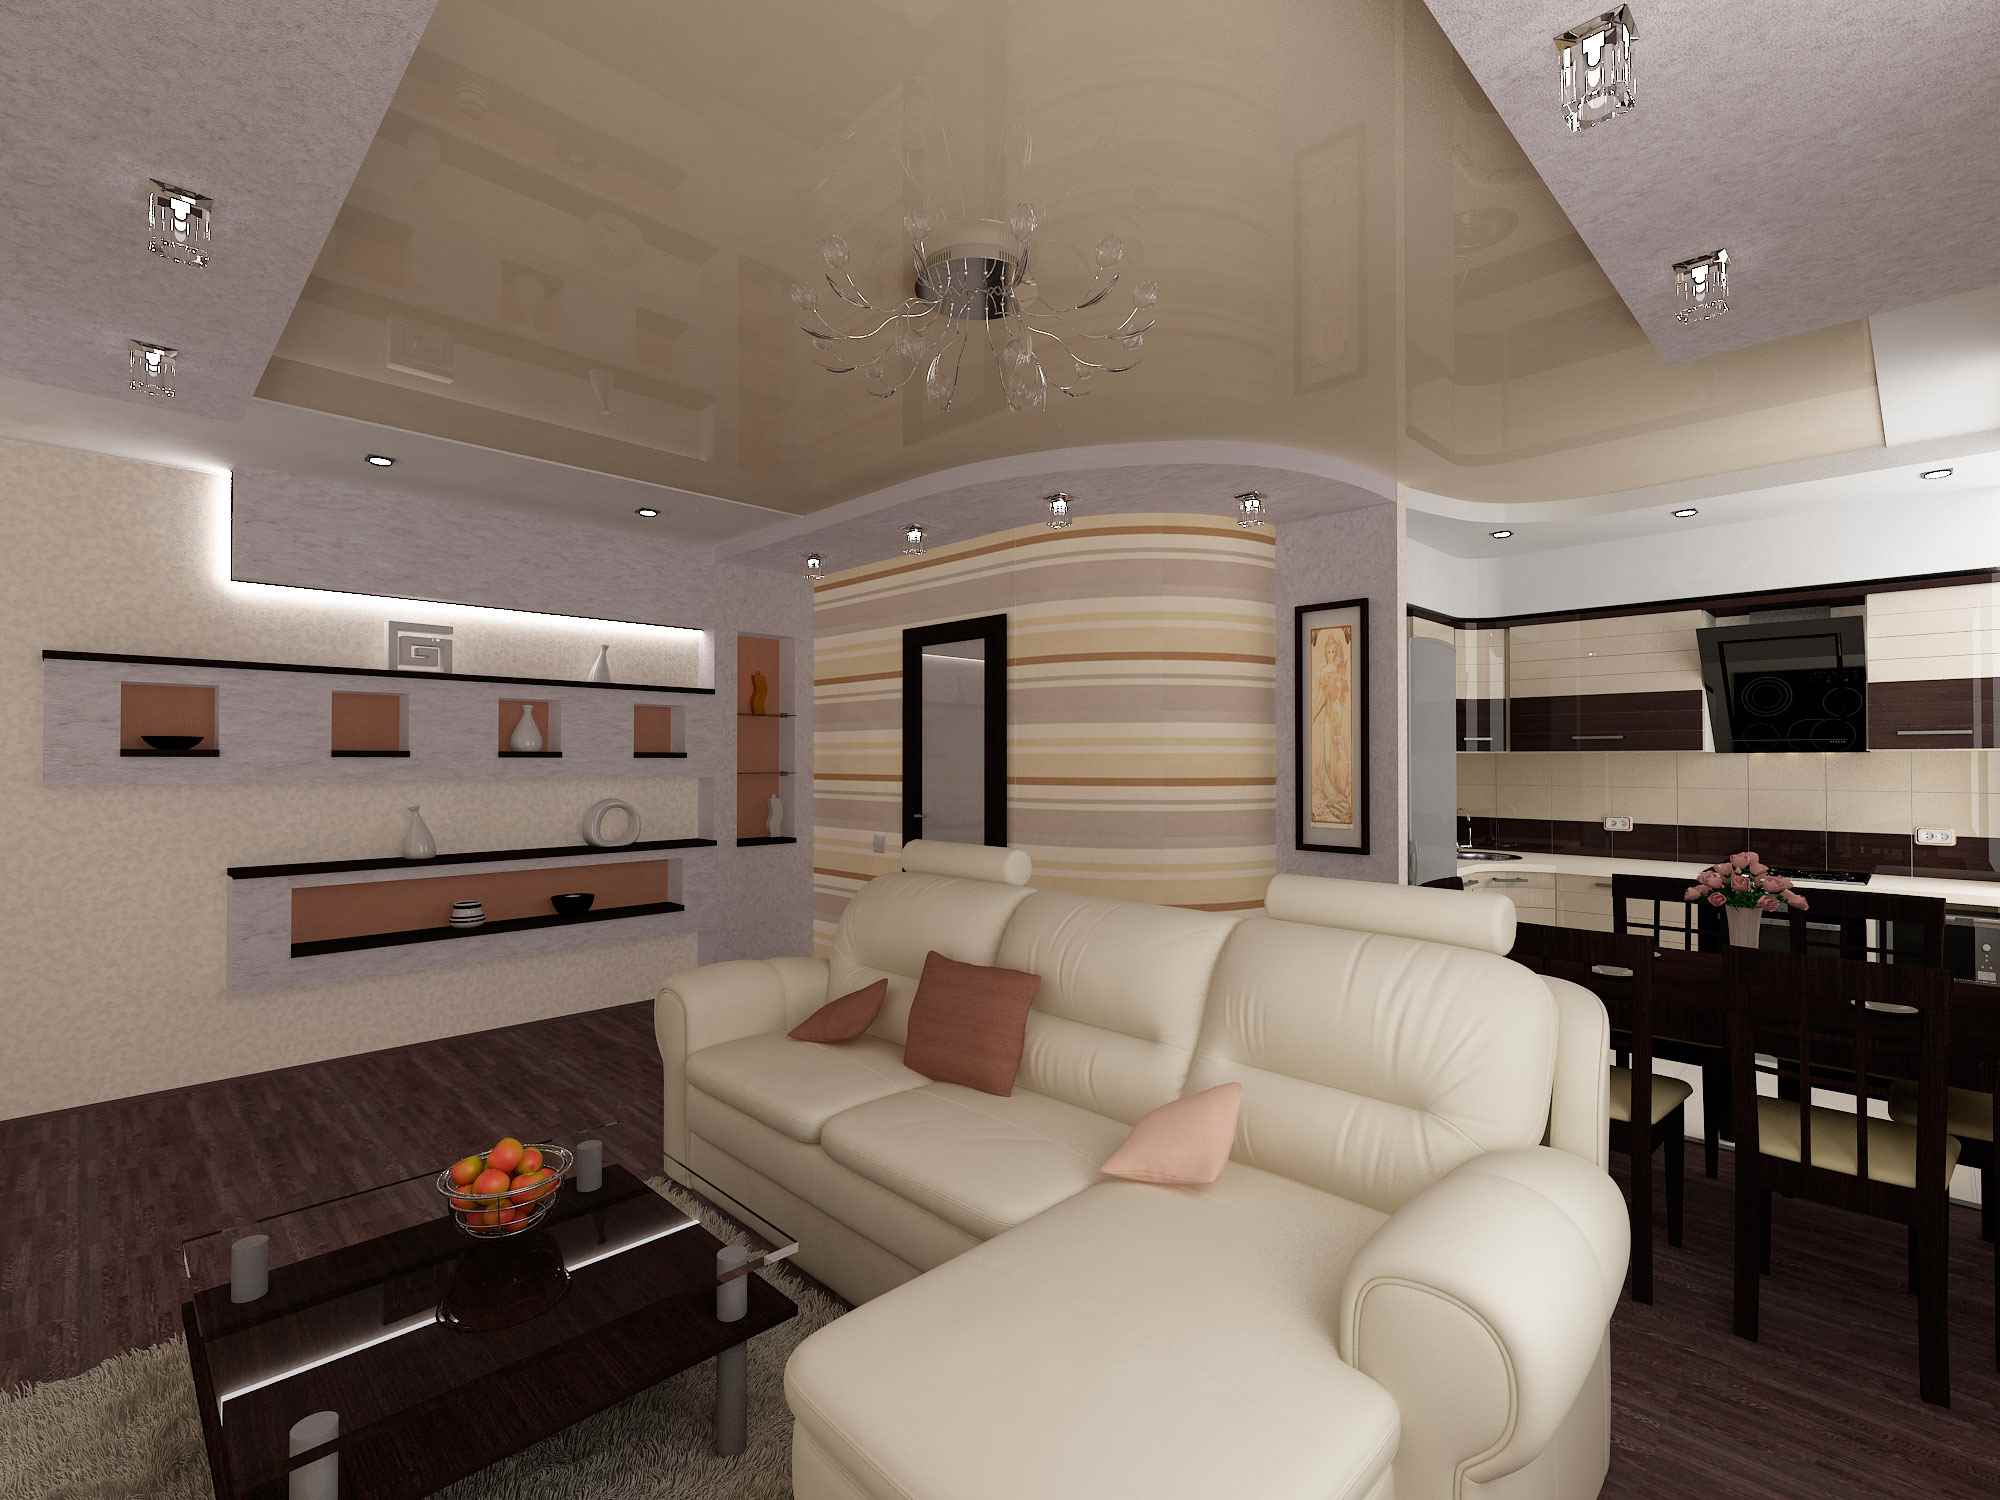 26 kvadrātmetru studijas tipa dzīvokļa gaiša dekorēšanas iespēja